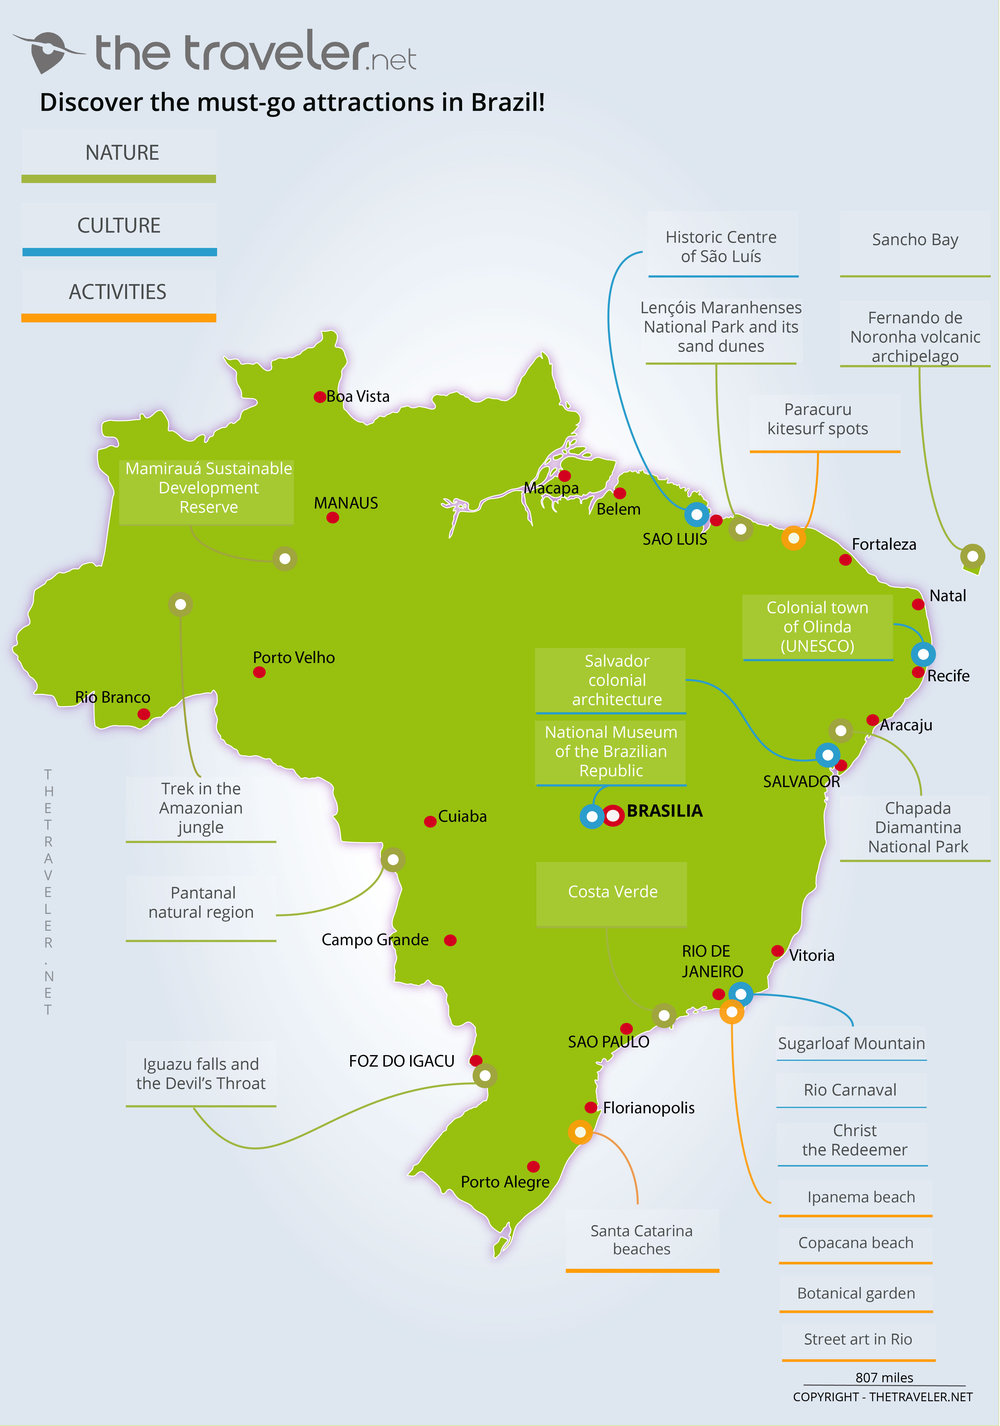 brazil travel plans